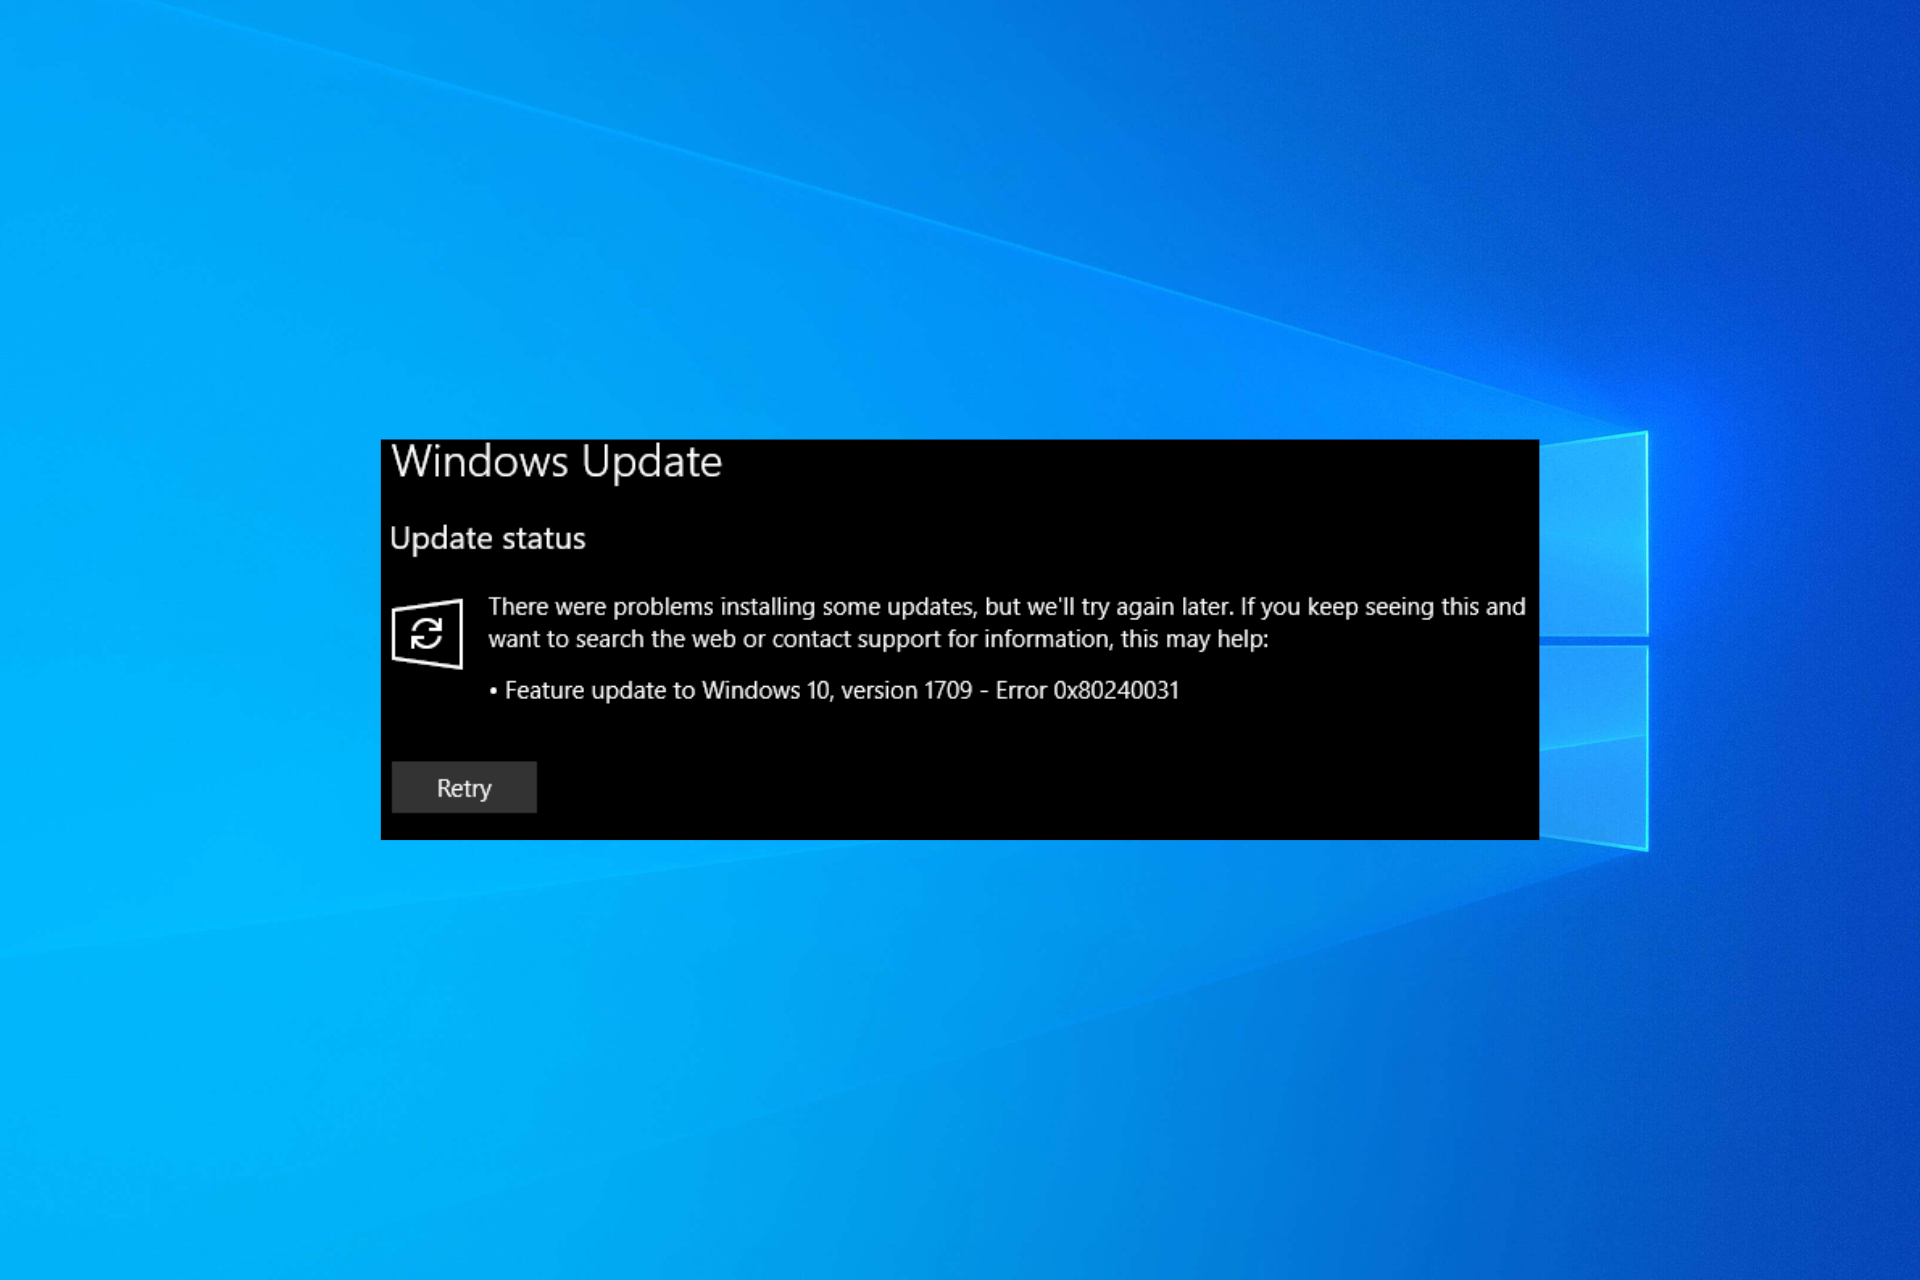 Windows Update Error 0x80240031